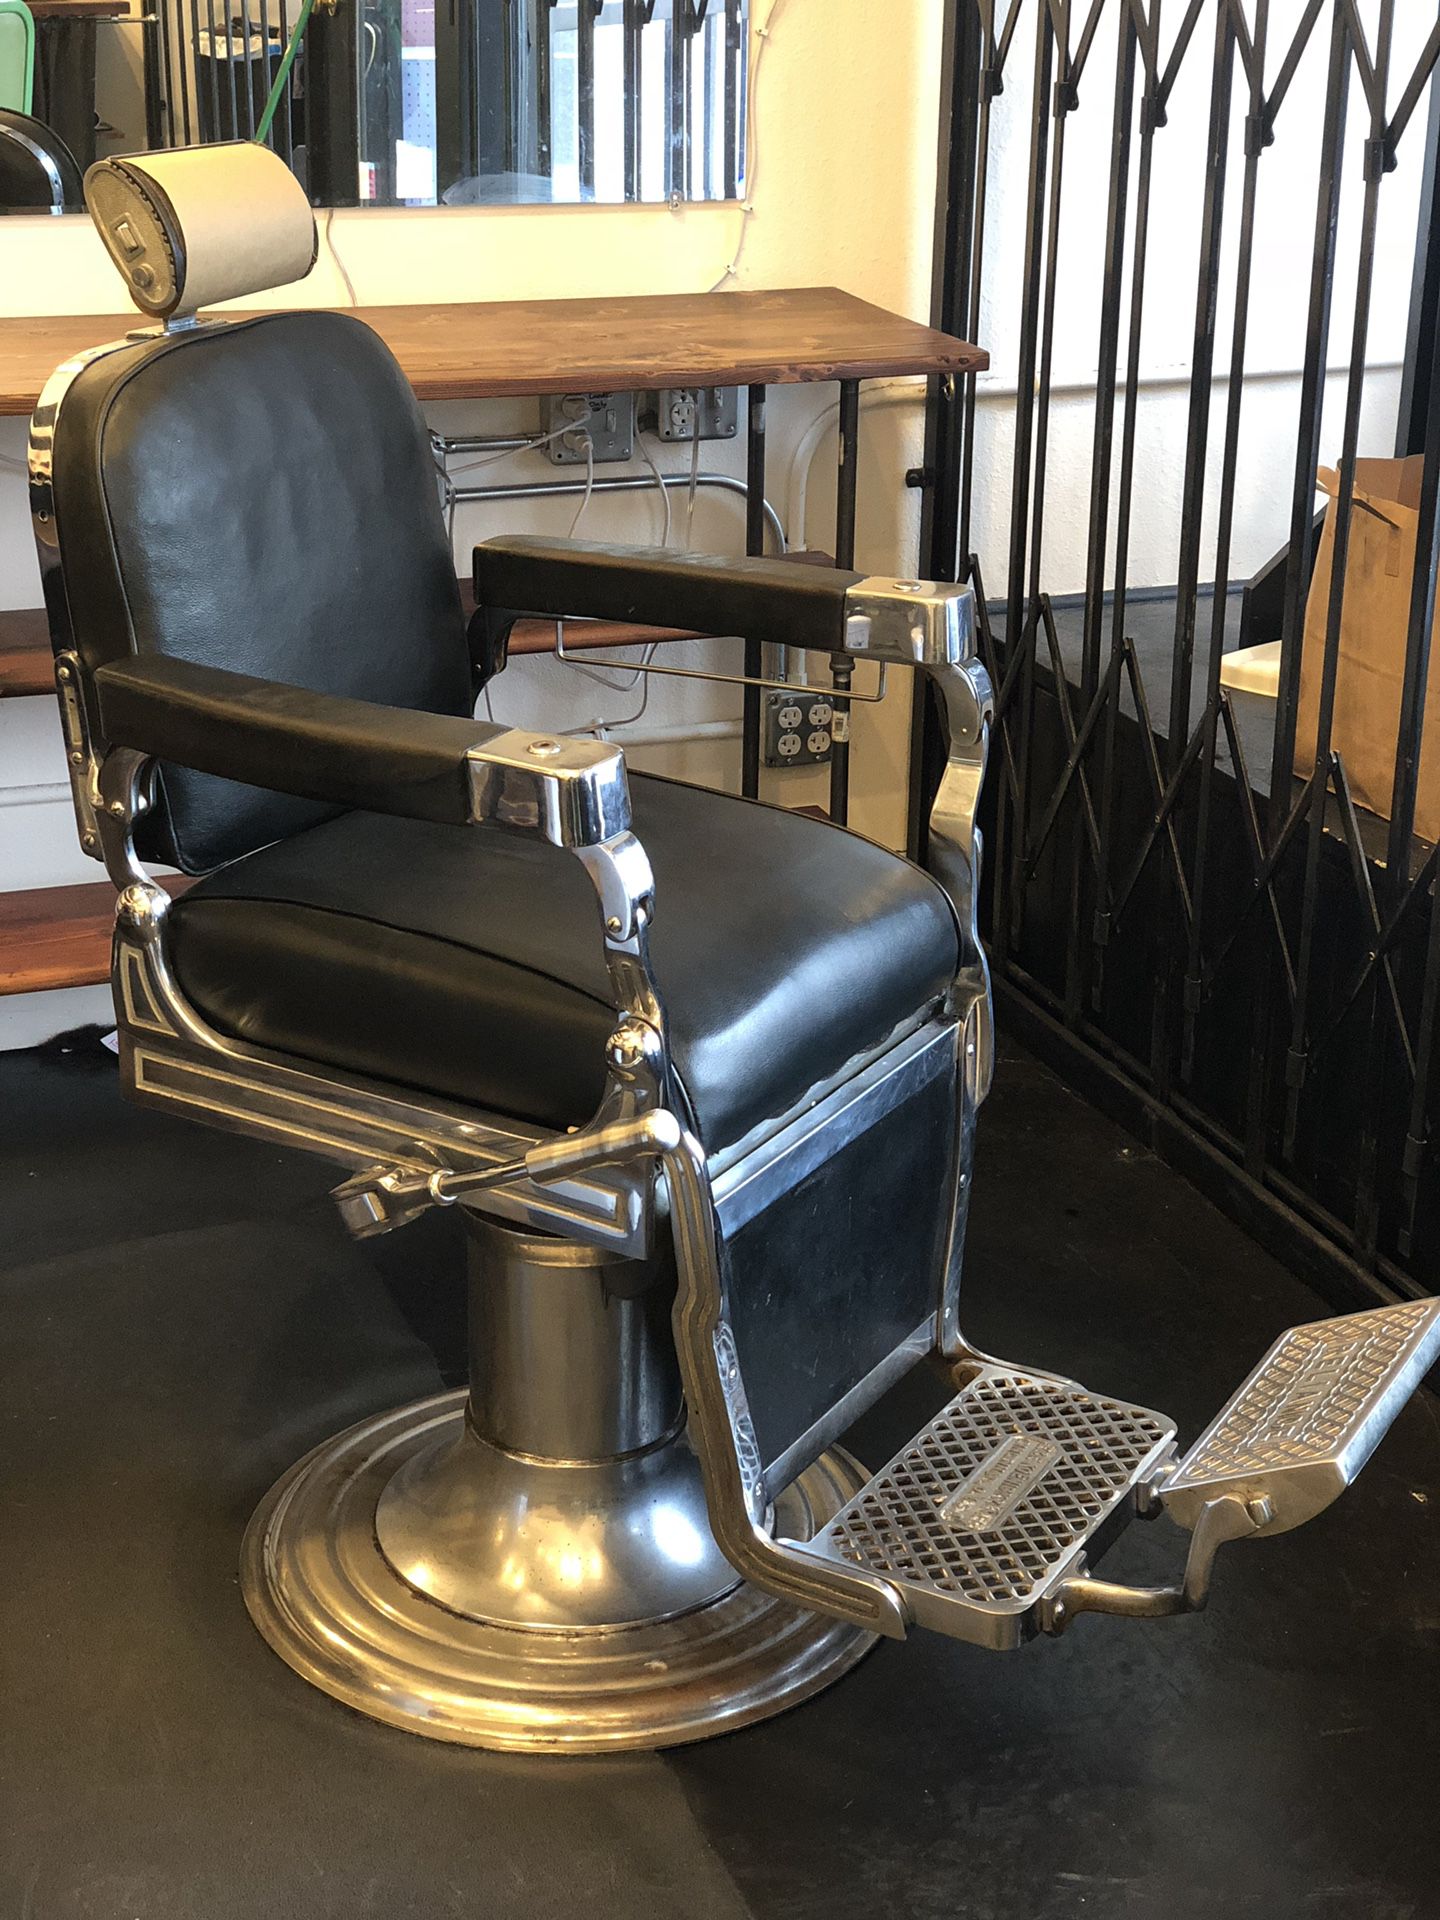 Reliance Koenigkramer Barber Chair Antique Vintage Electric